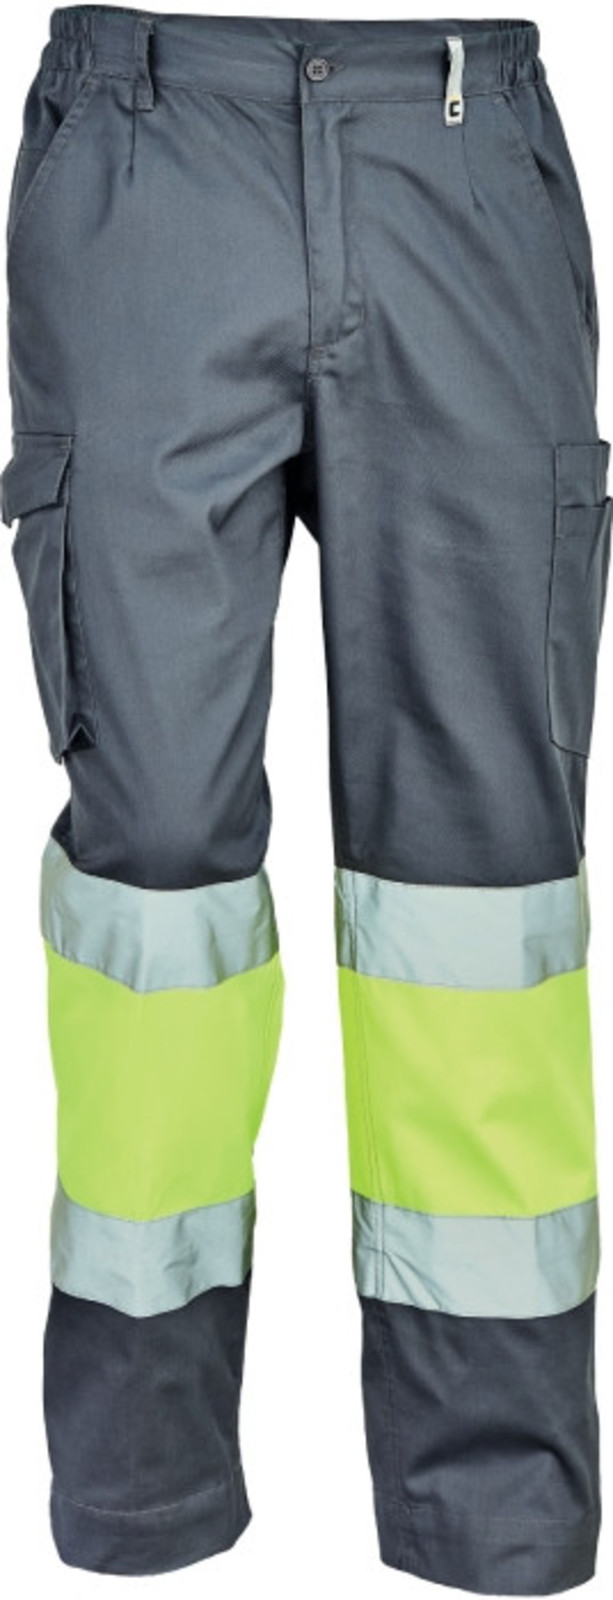 Pracovné reflexné nohavice Cerva Ciudades Bilbao HV - veľkosť: 60, farba: sivá/žltá